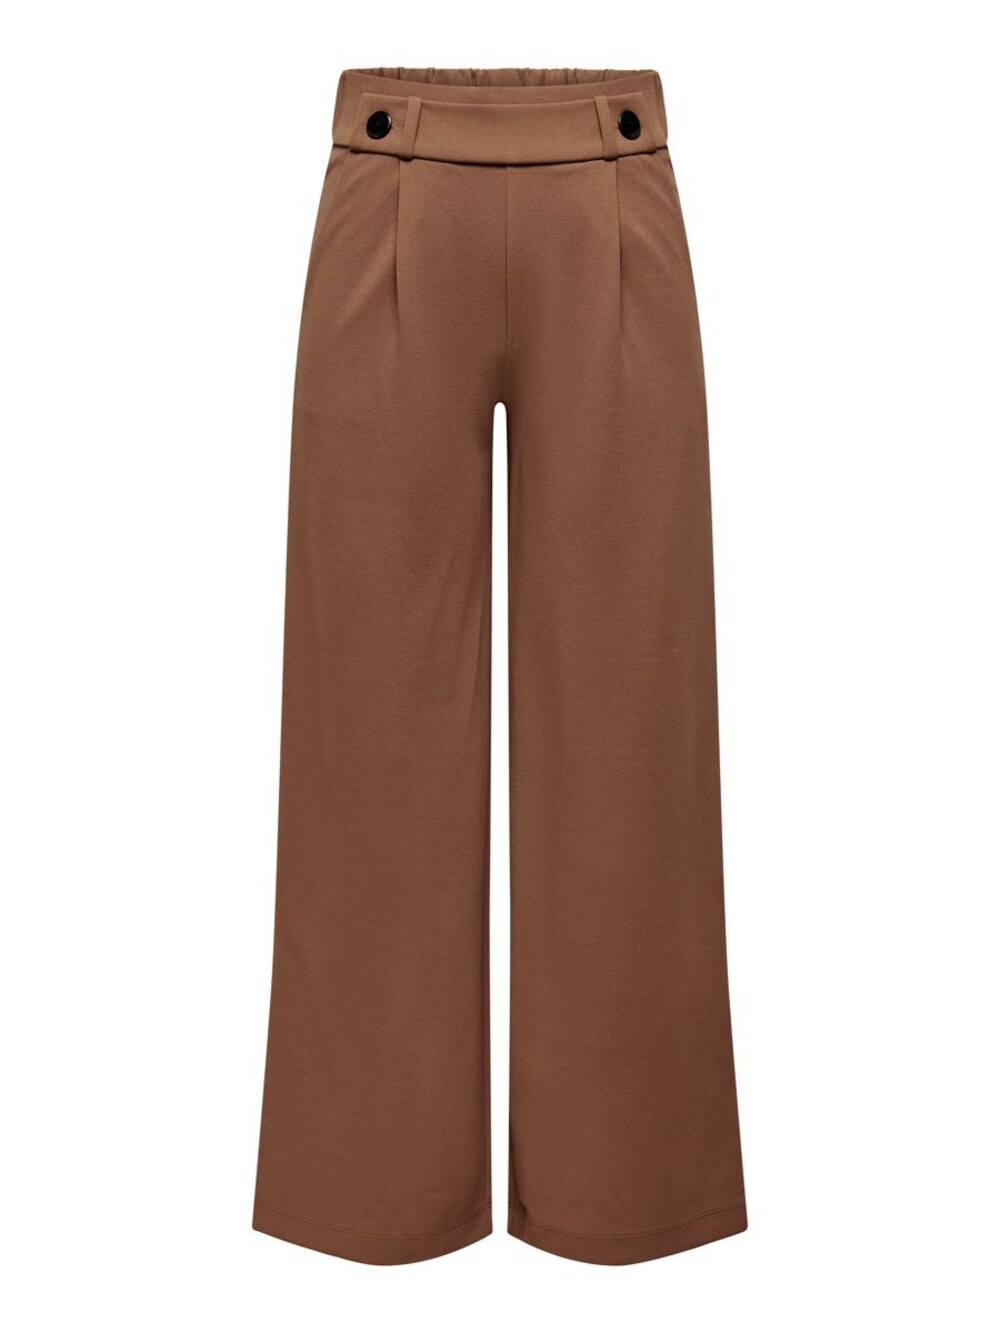 Широкие брюки со складками спереди JDY Geggo, коричневый